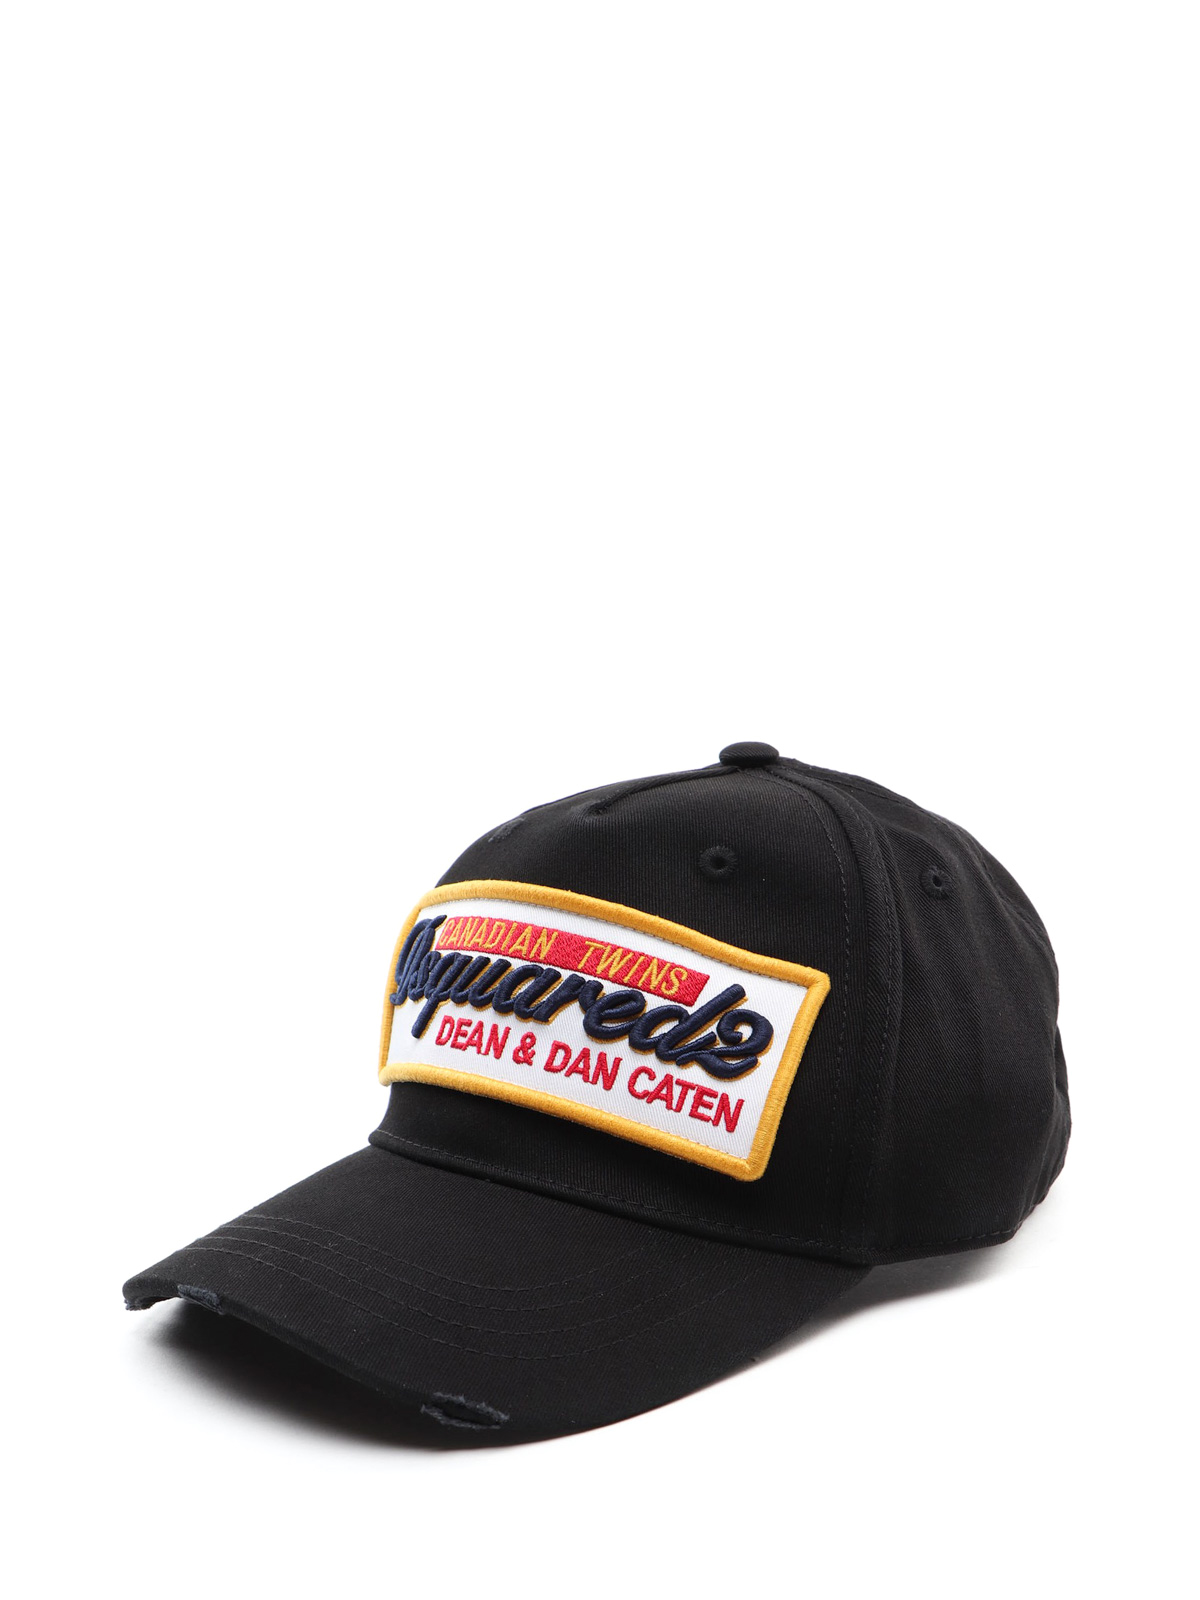 Dsquared2 - Maxi logo patch black baseball cap - hats & caps ...